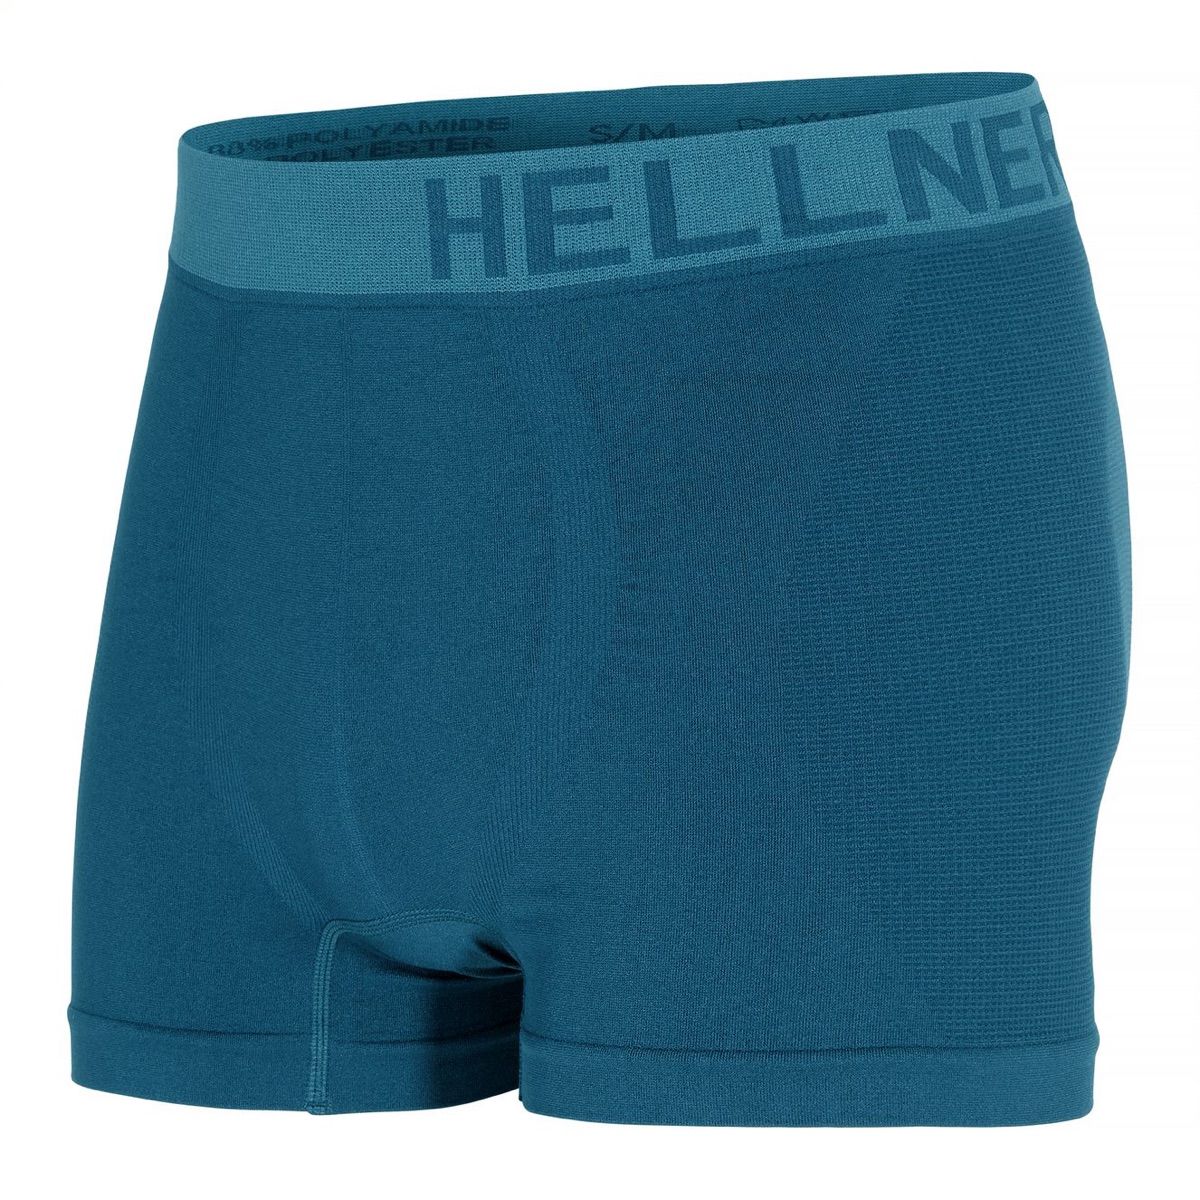 Hellner Svierkku Seamless Boxer Men's Blue Coral